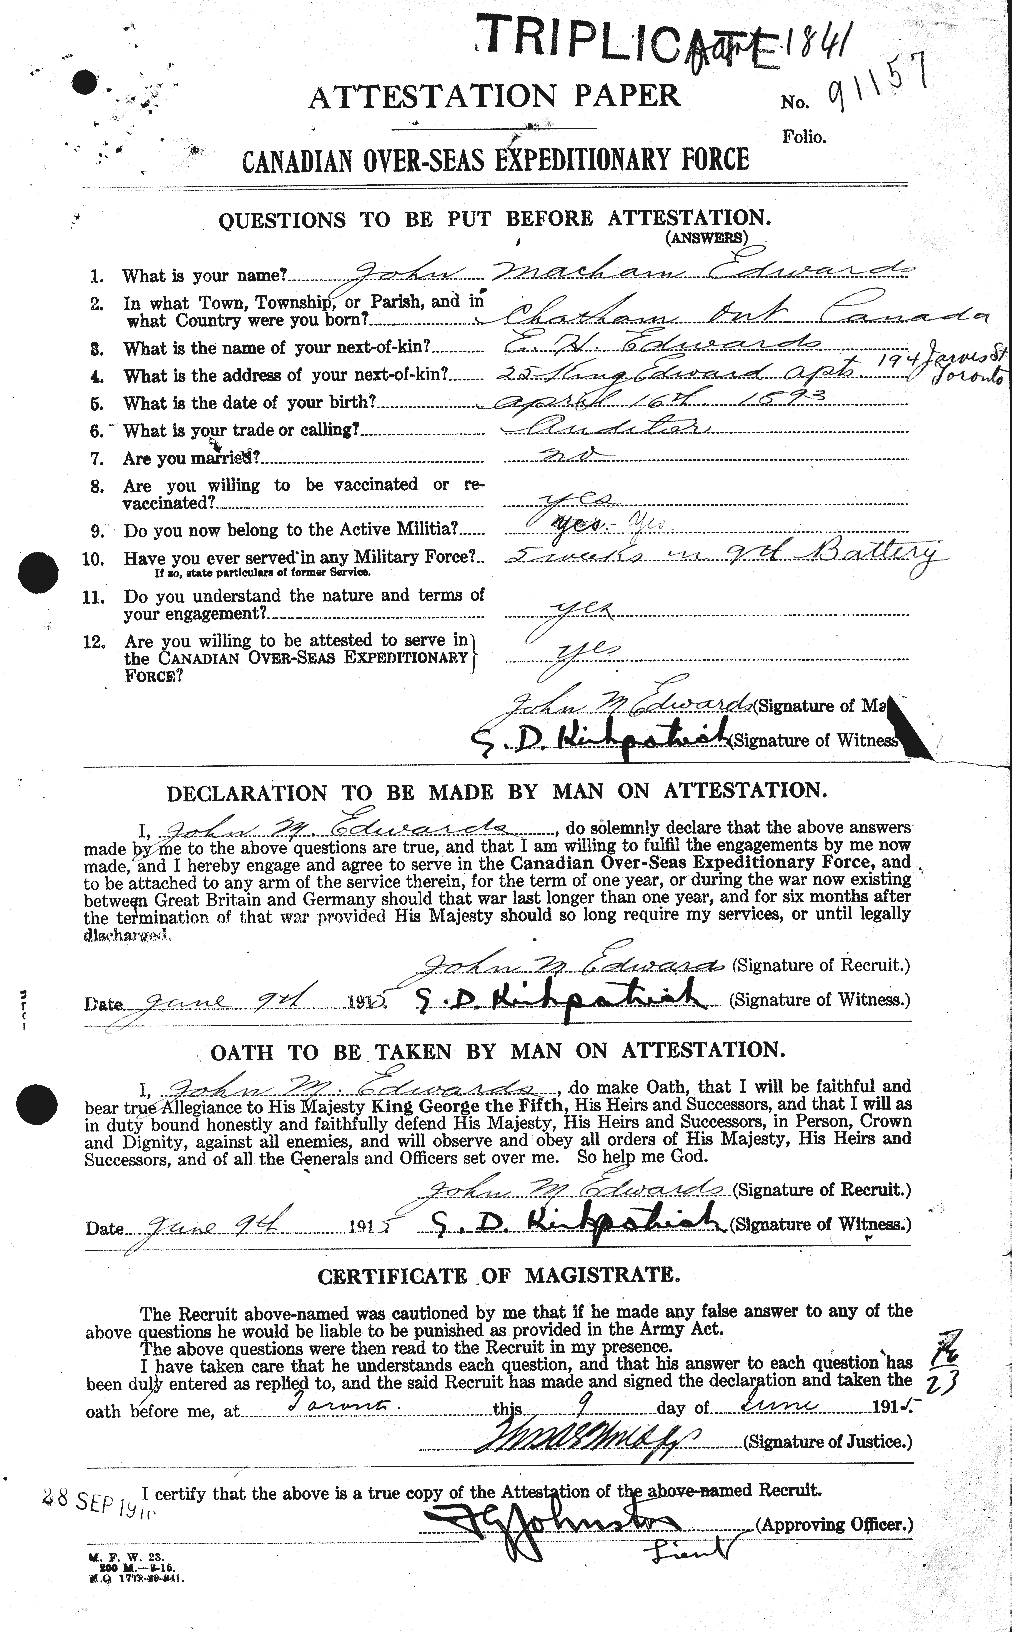 Dossiers du Personnel de la Première Guerre mondiale - CEC 310149a